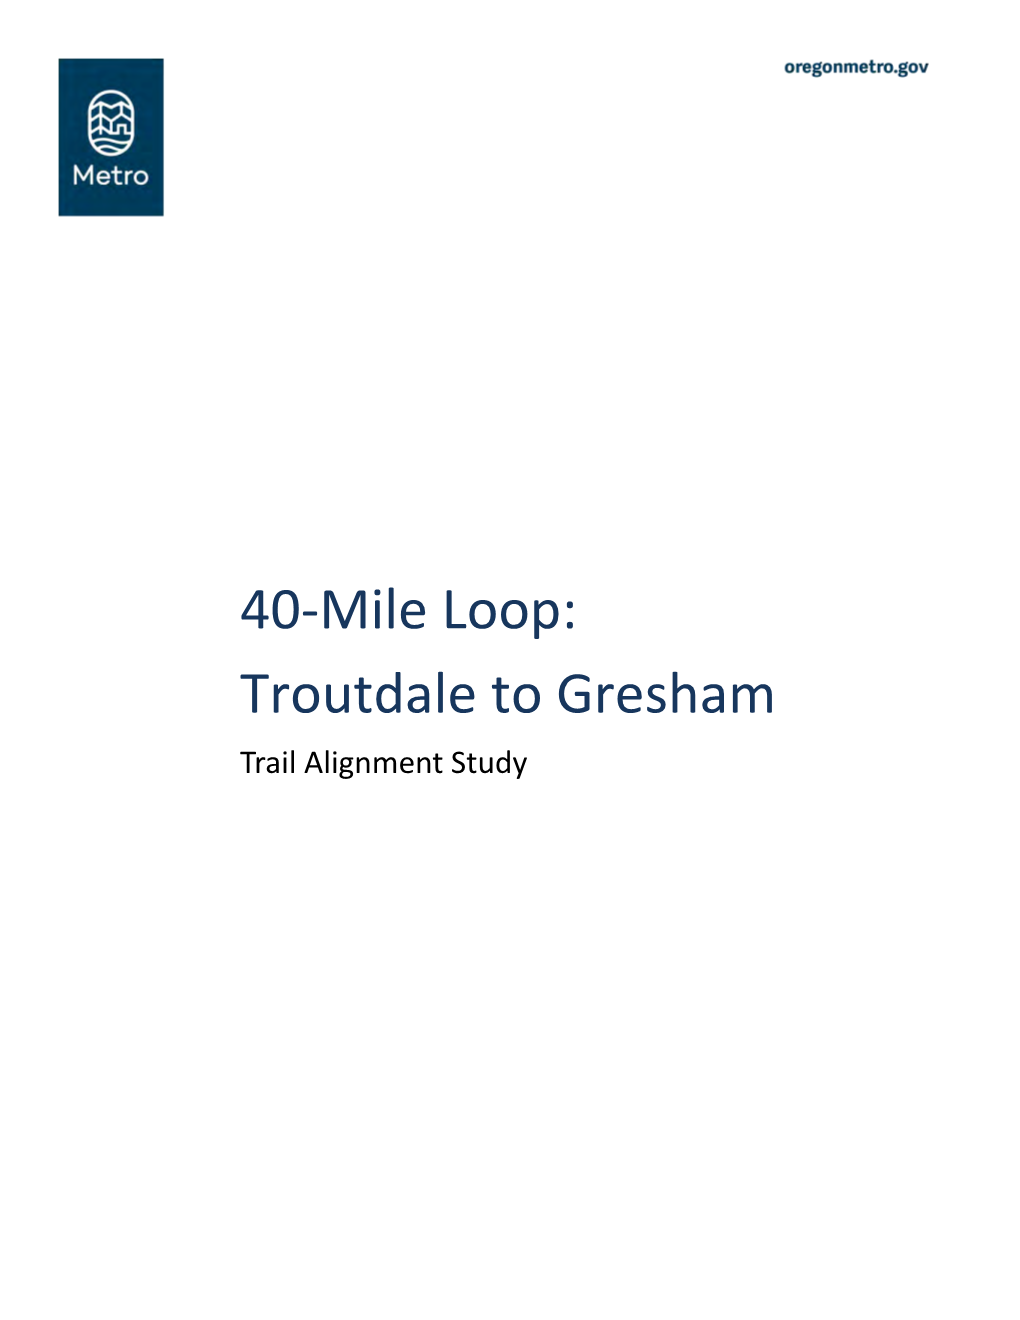 40-Mile Loop: Troutdale to Gresham